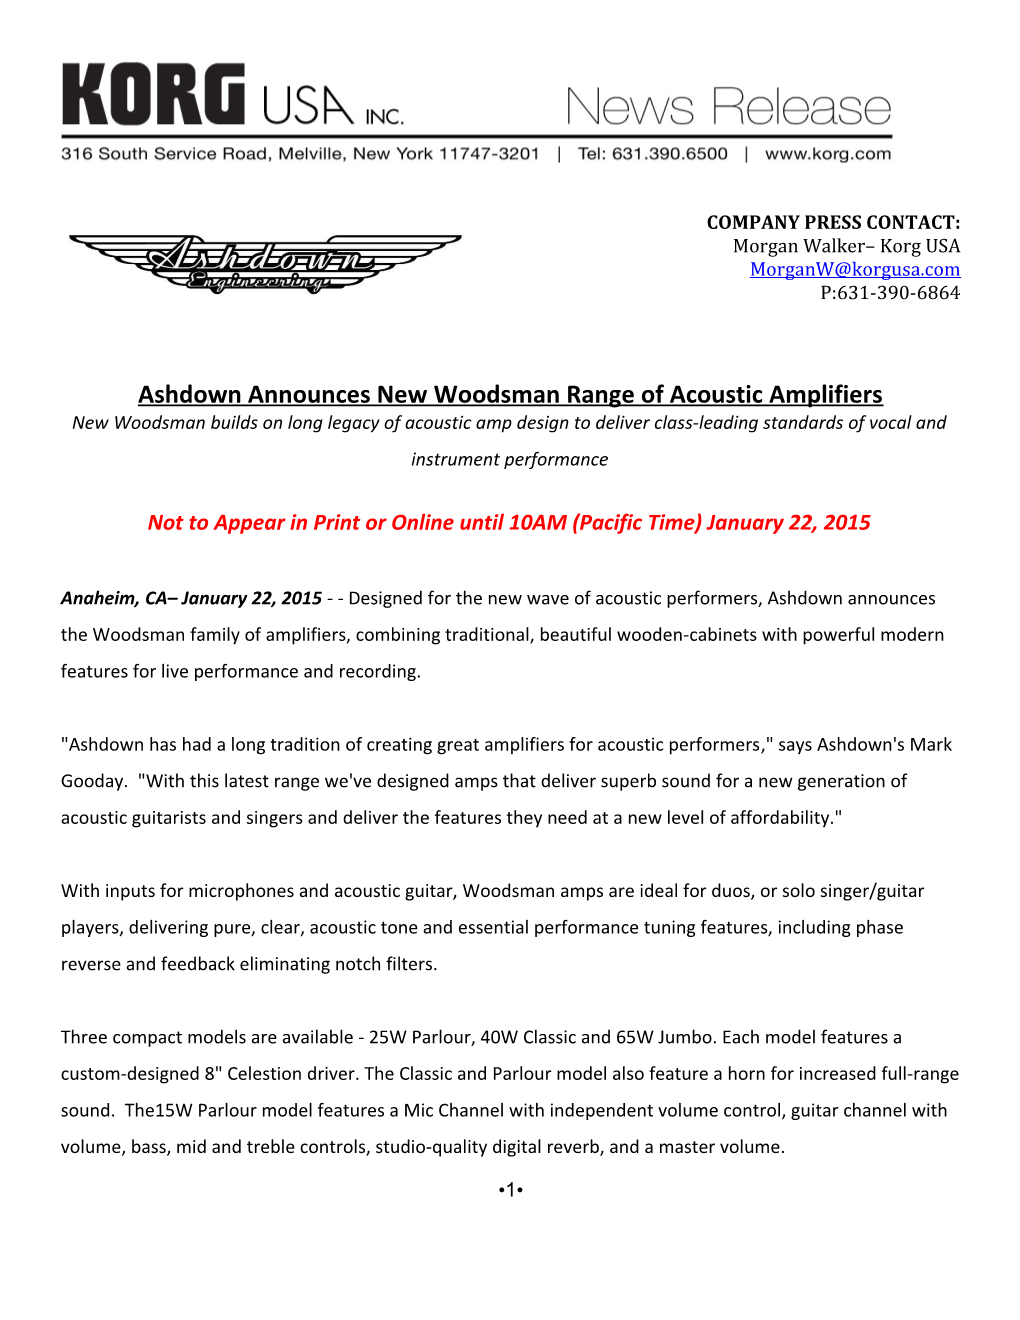 Ashdown Announces New Woodsman Range of Acoustic Amplifiers